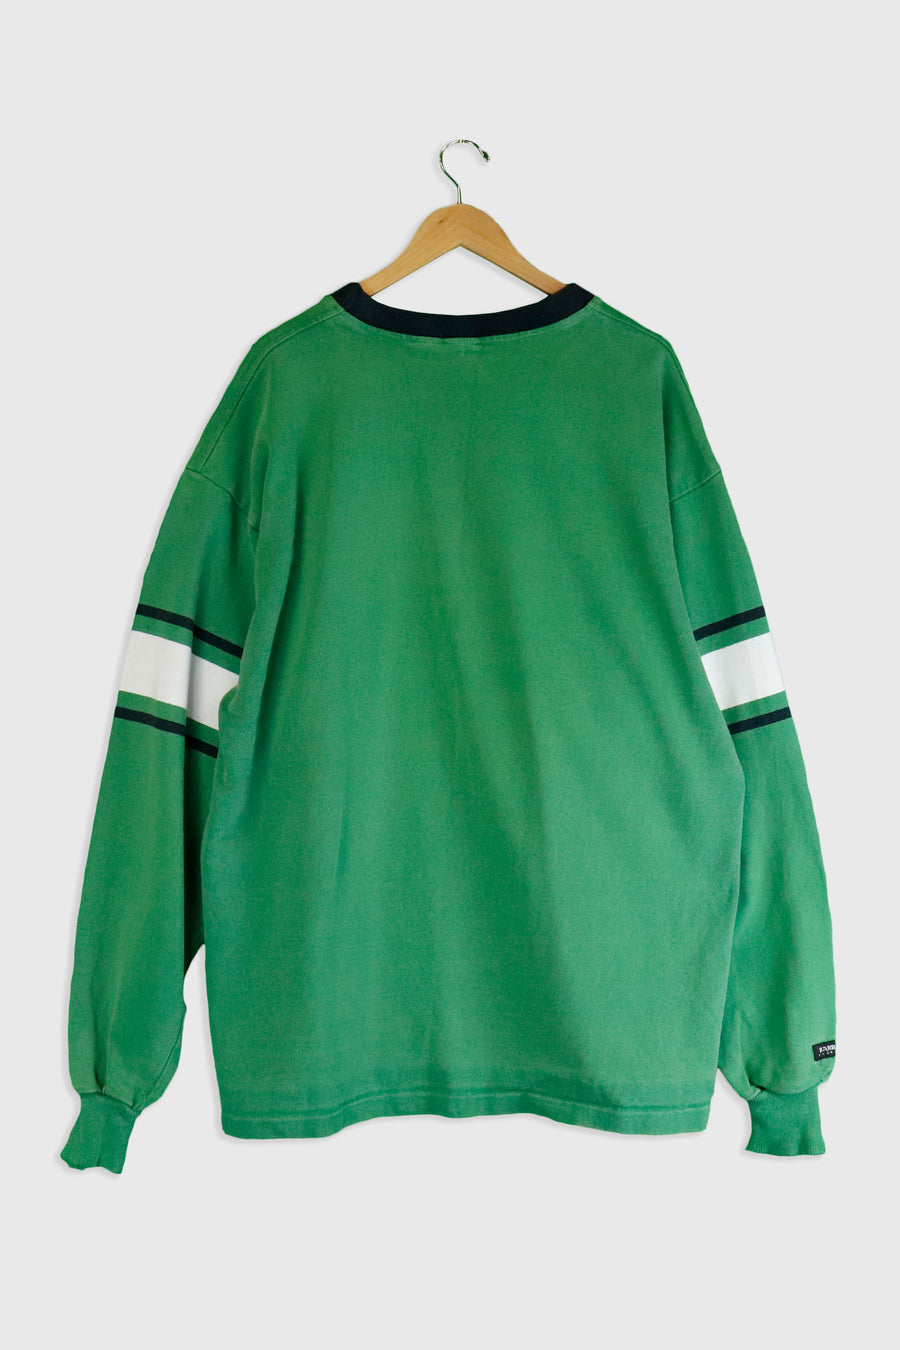 Vintage CFL Saskatchewan Roughriders Embroidered Sweatshirt Sz 2XL